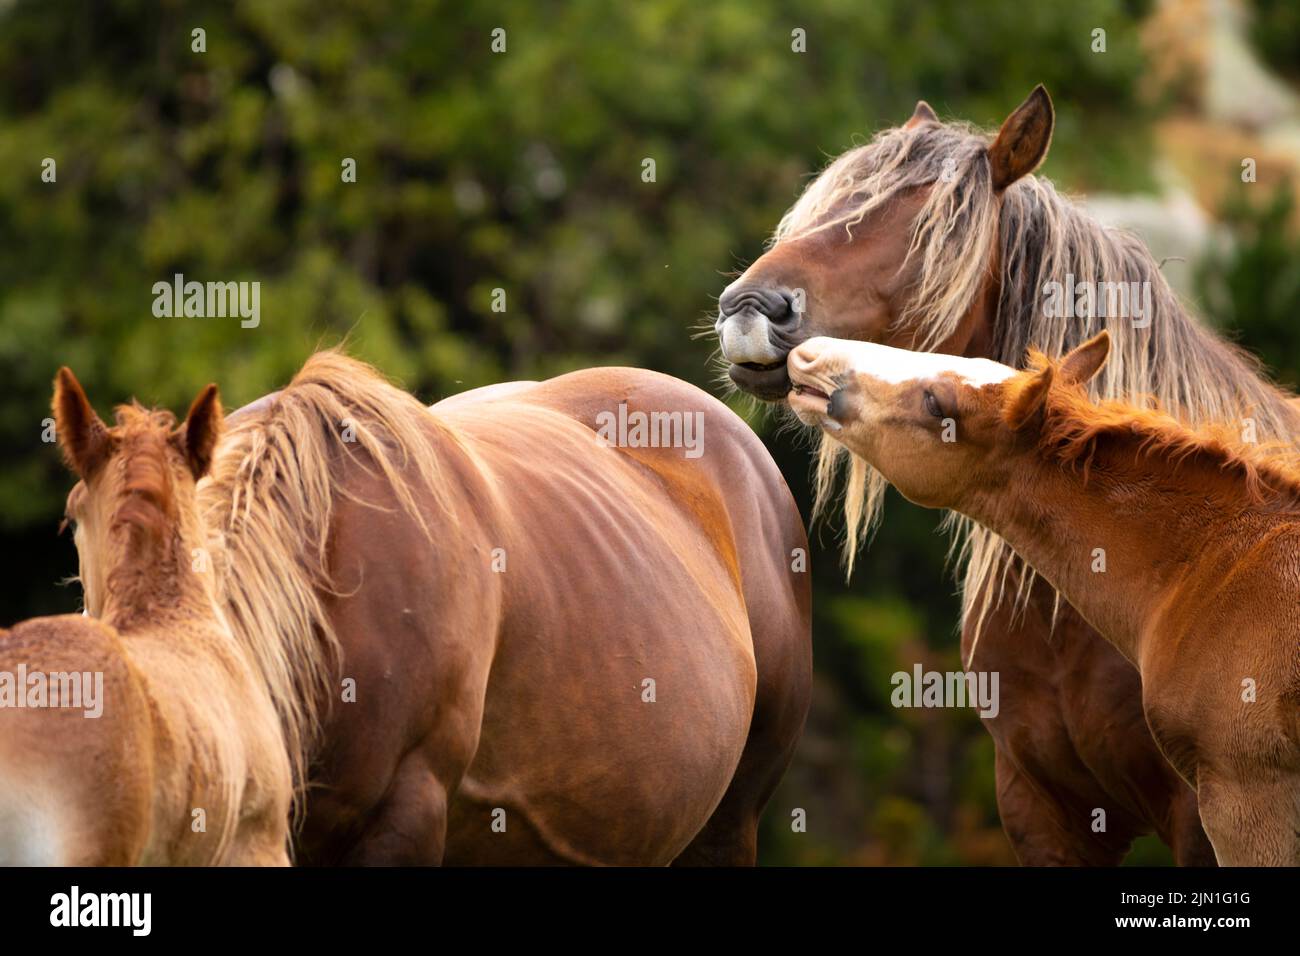 Jeune poulain touchant son père (étalon) avec sa bouche. (Equus ferus caballus). Été, Pyrénées. Cavall Pirinenc Català (Cheval pyrénéen catalan) Banque D'Images